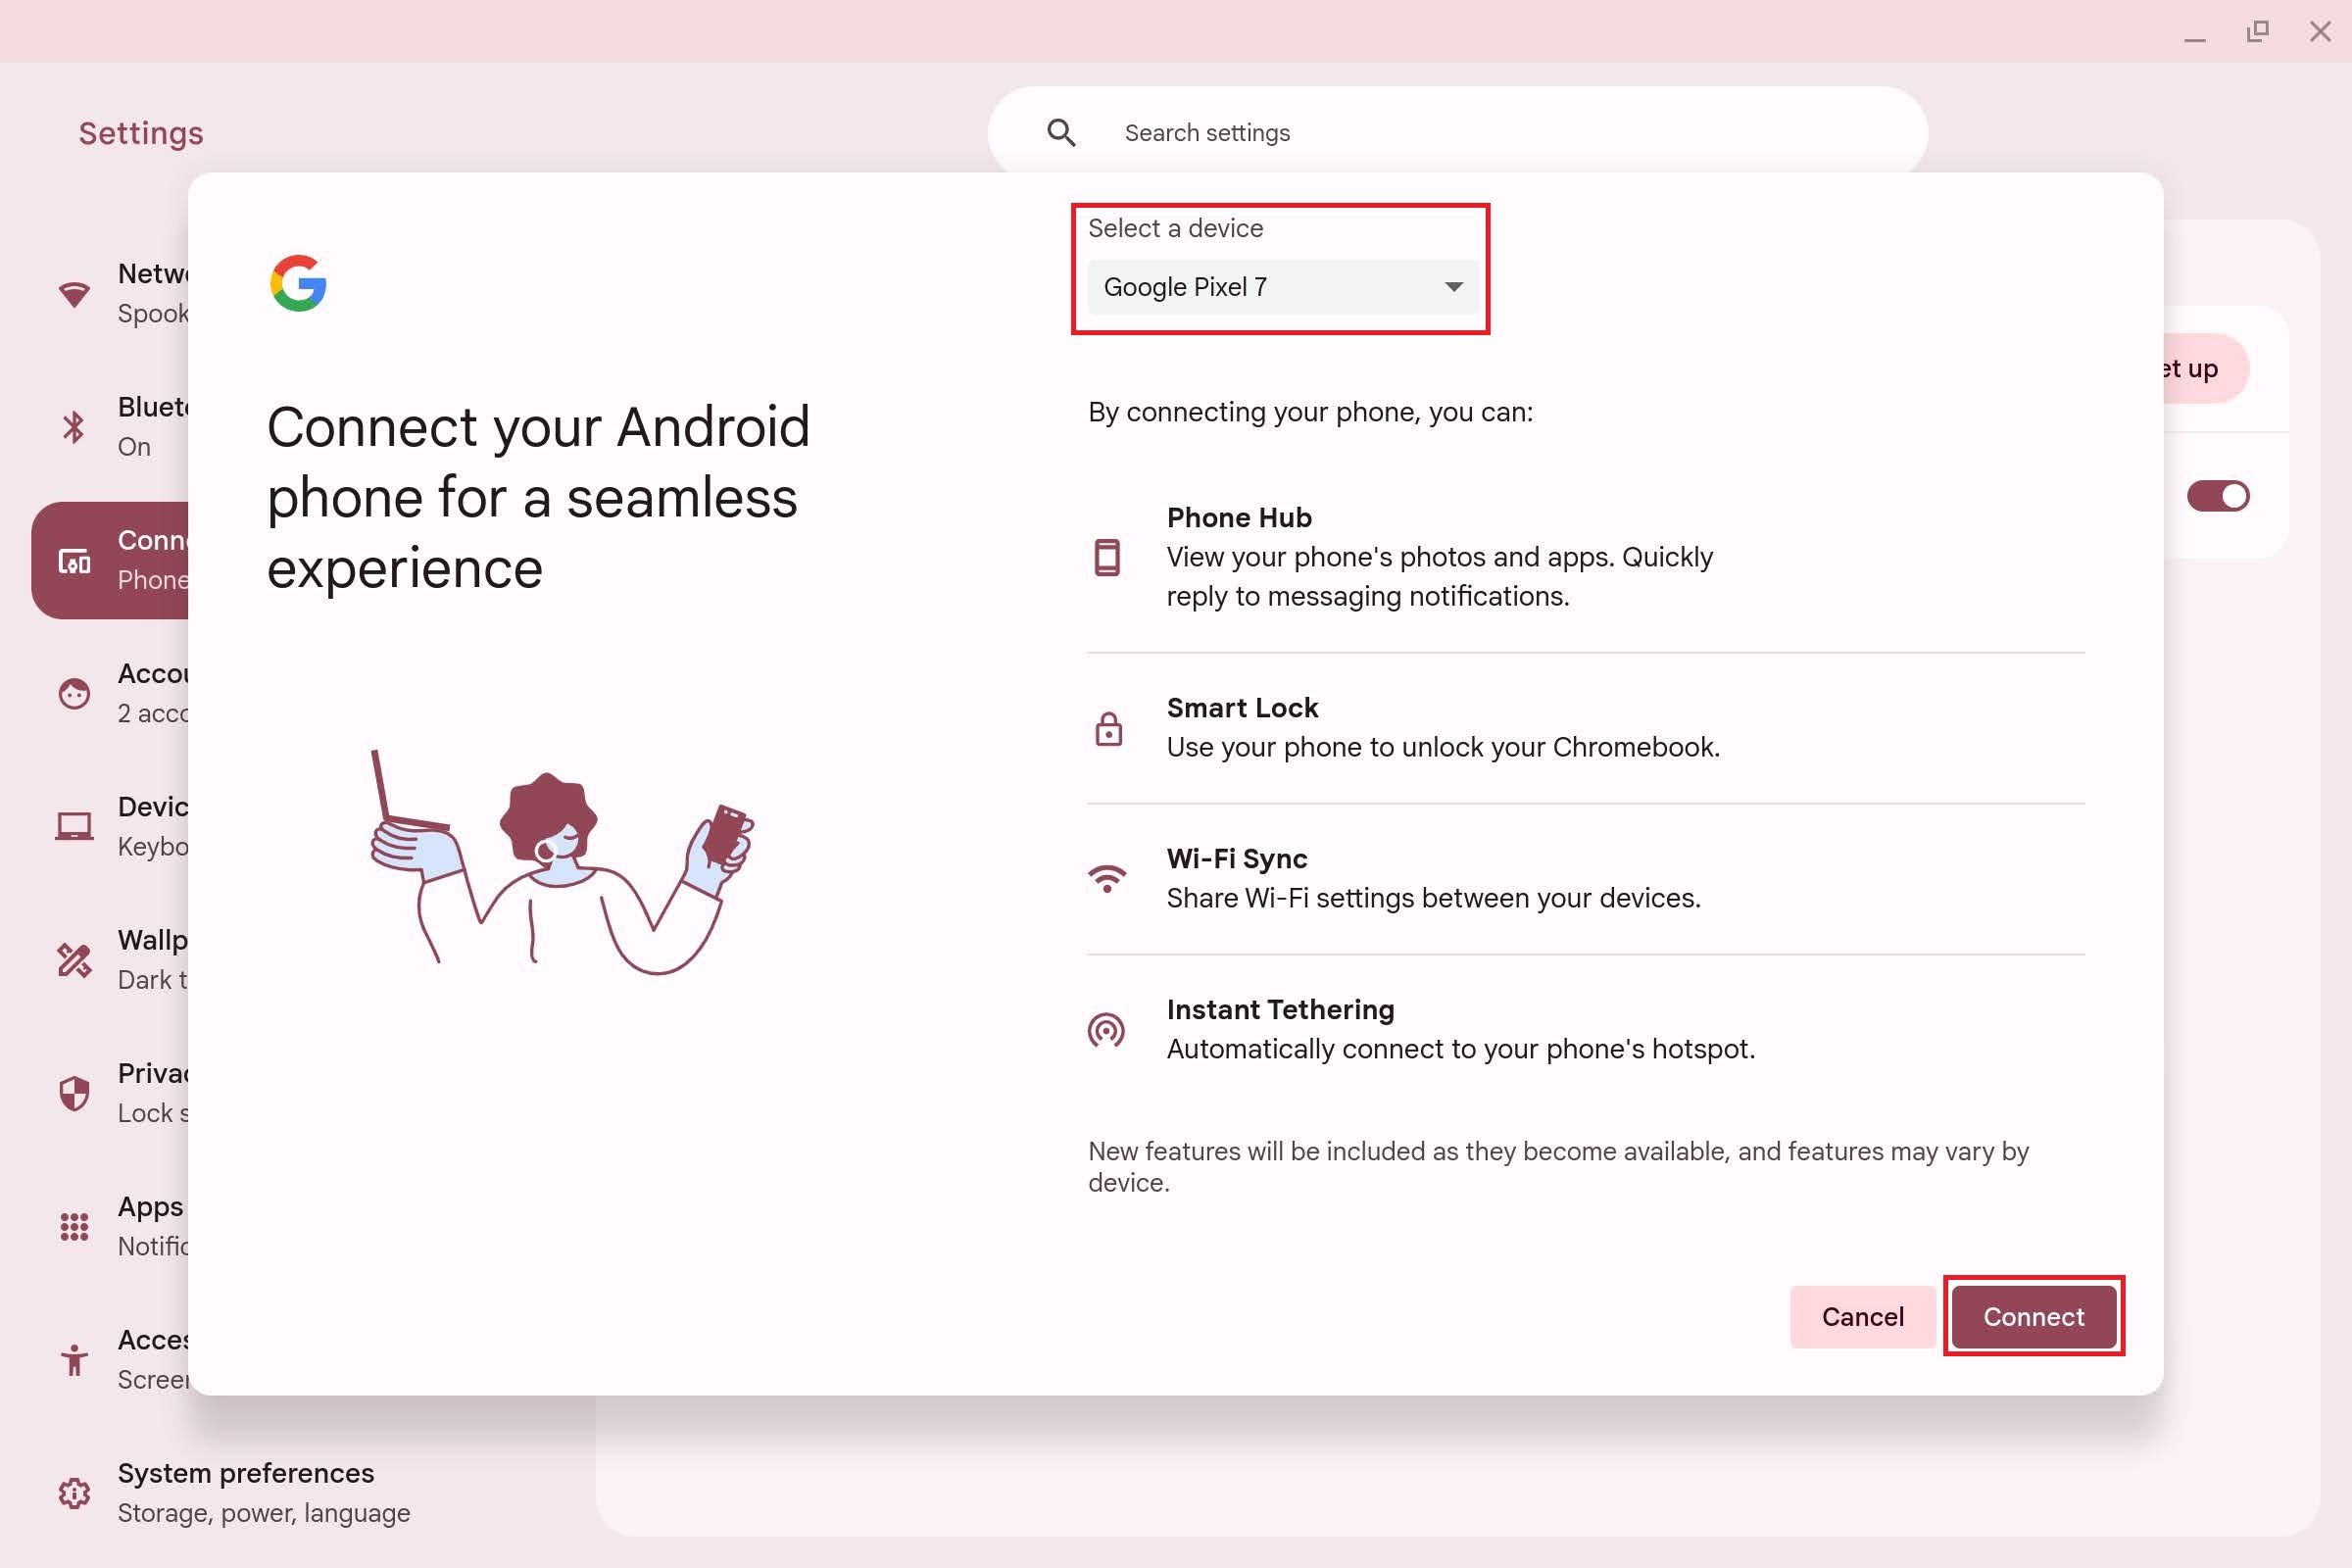 O pop-up Conecte seu telefone Android para uma experiência perfeita aparece com caixas vermelhas ao redor do menu suspenso Selecione um dispositivo e do botão Conectar